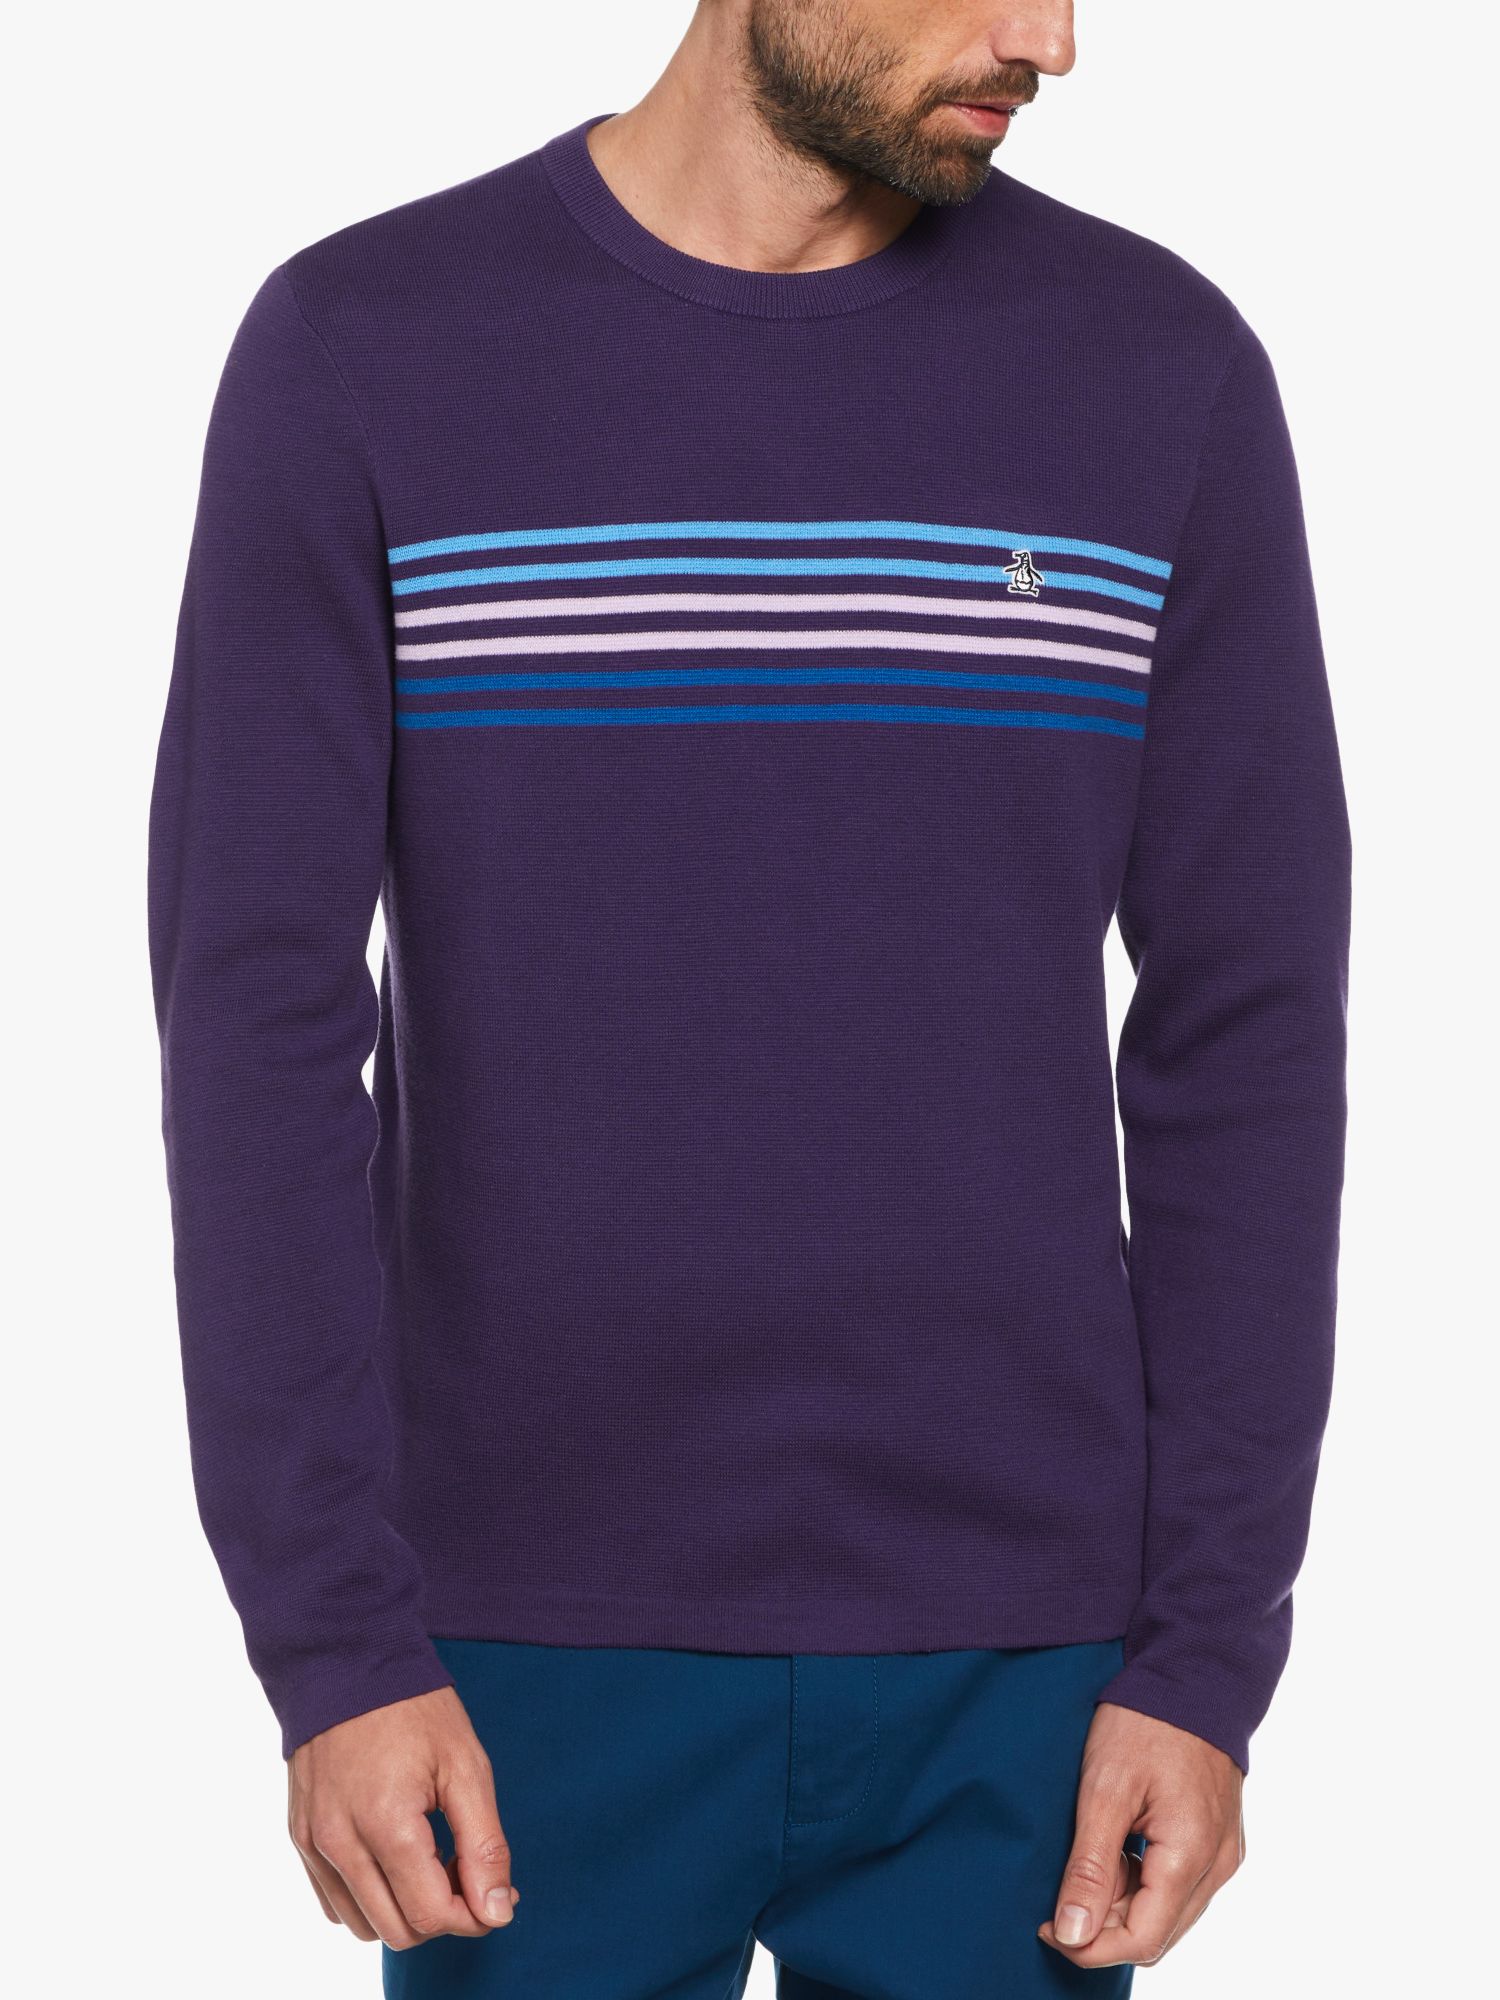 Original Penguin Chest Stripe Sweater